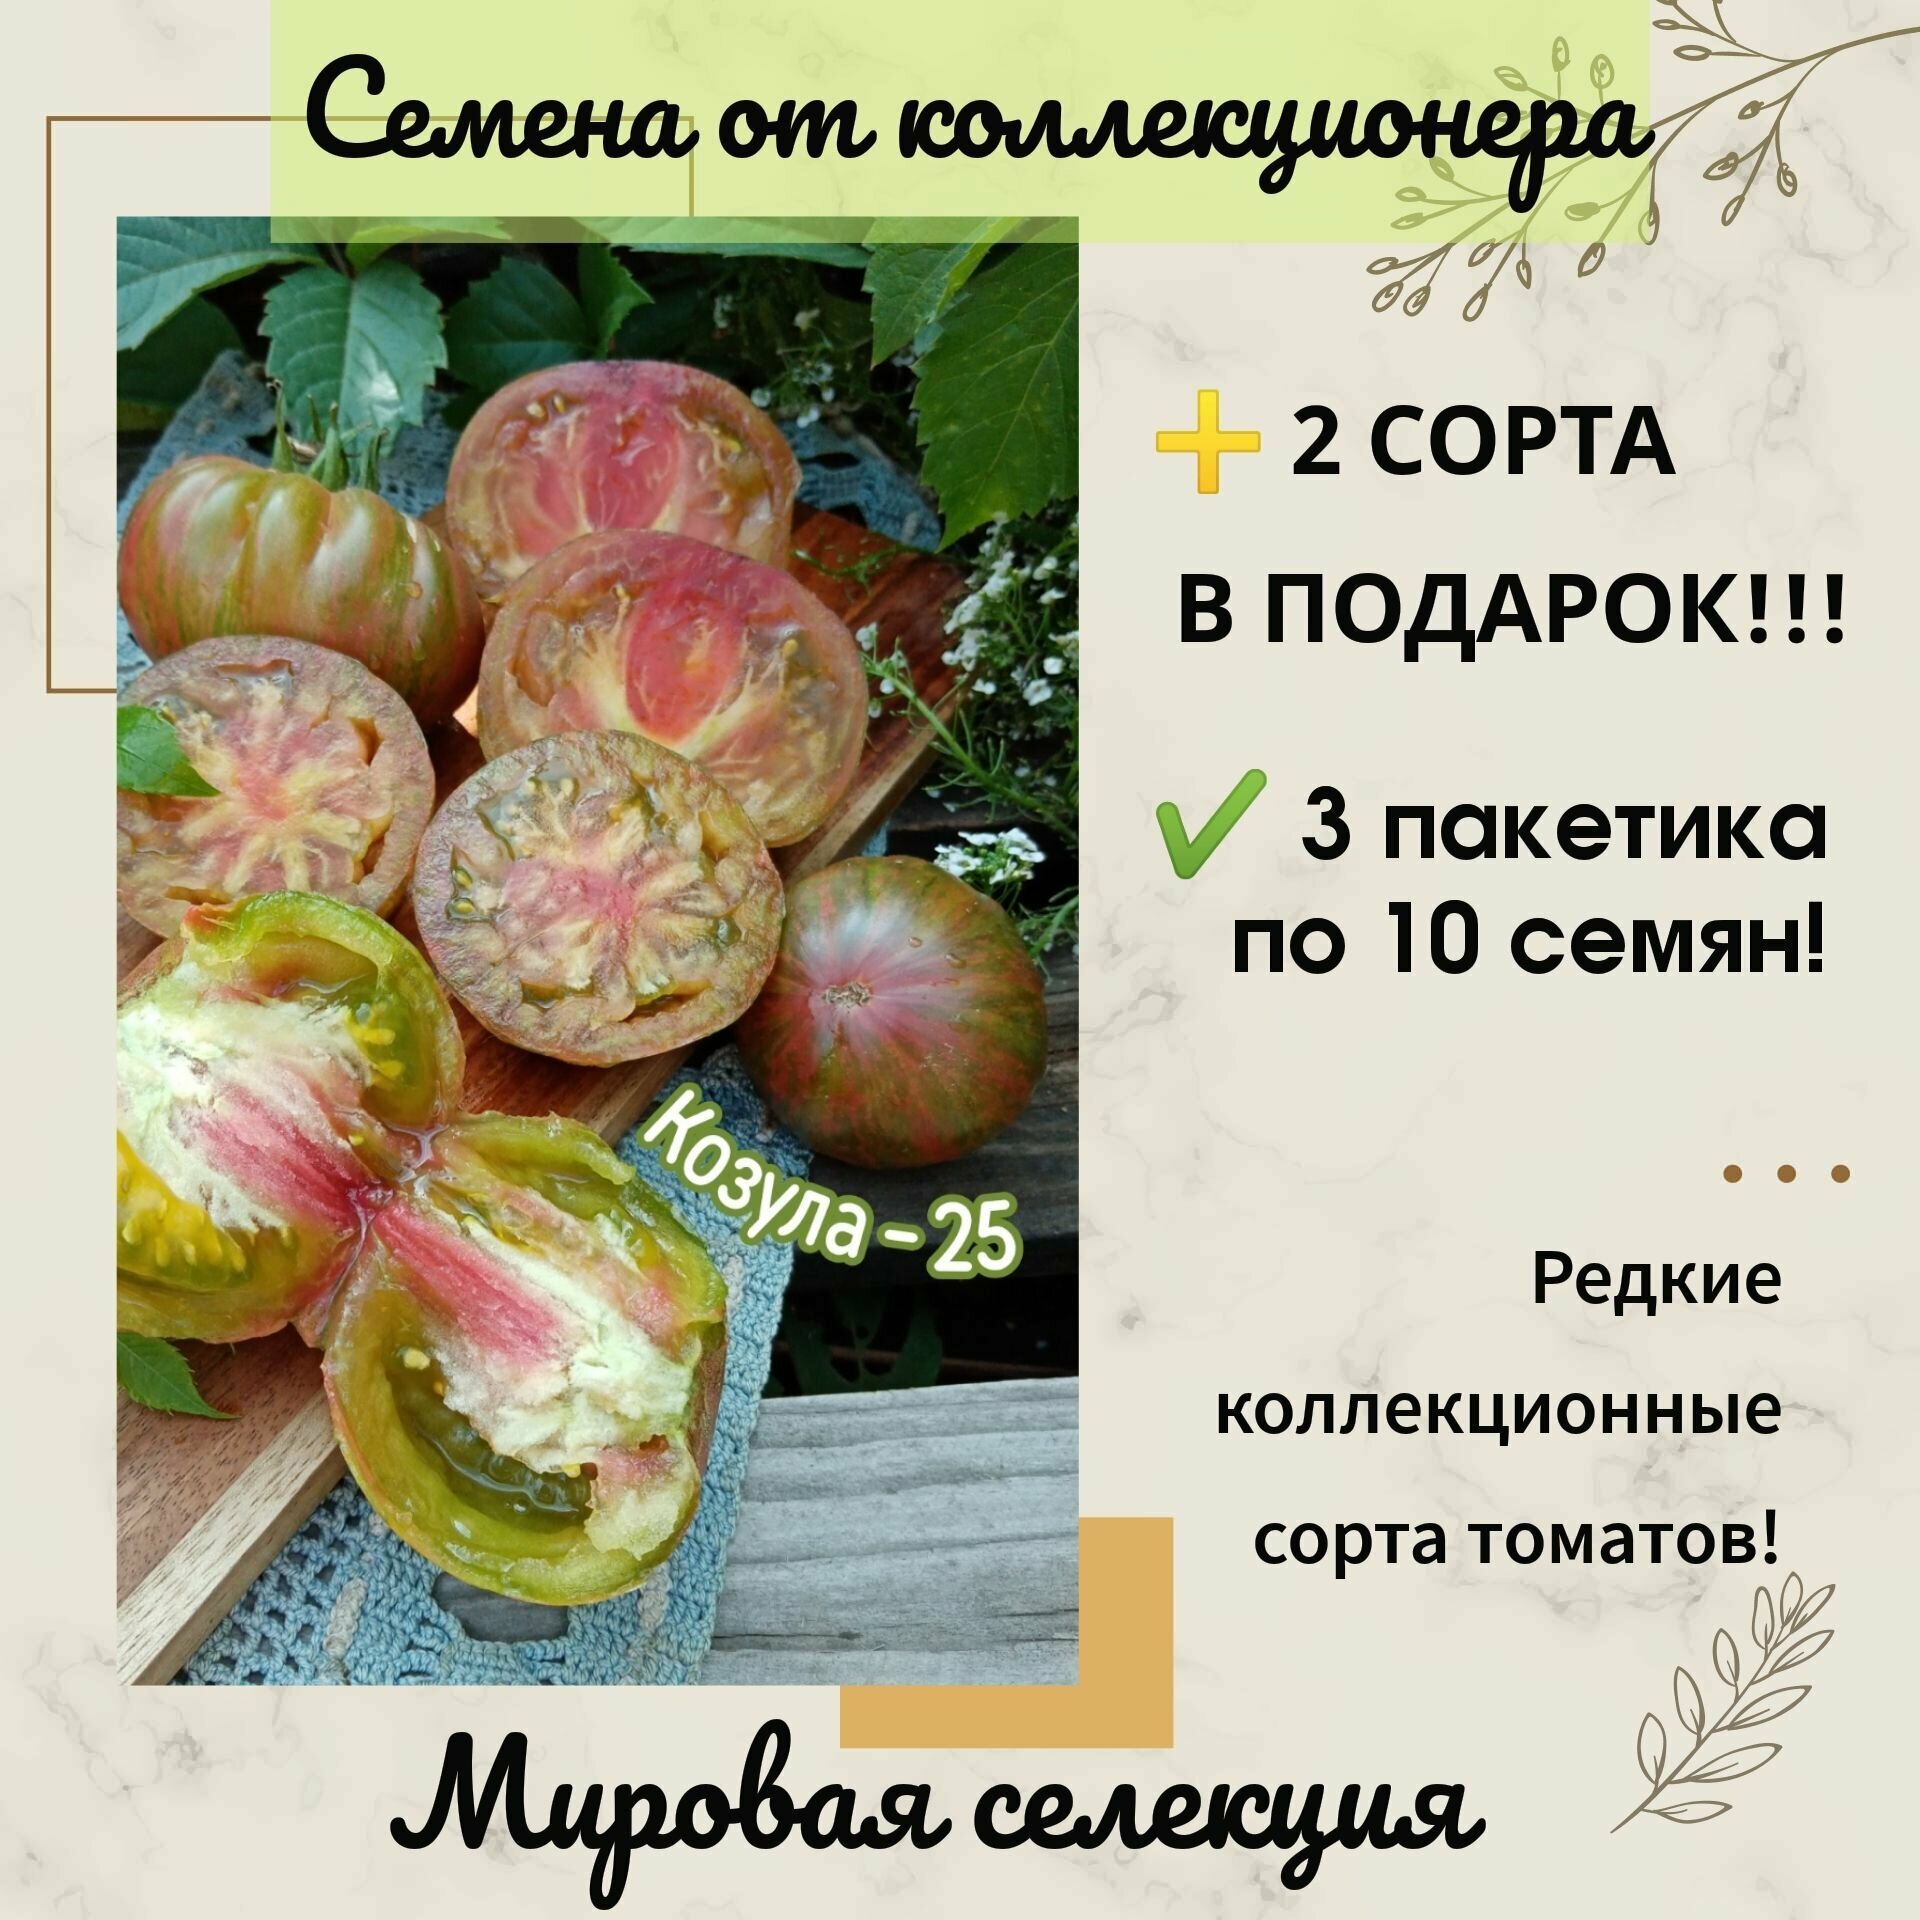 Томат Козула 25 польский сорт Анны Янковски индетерминантный семена от коллекционера